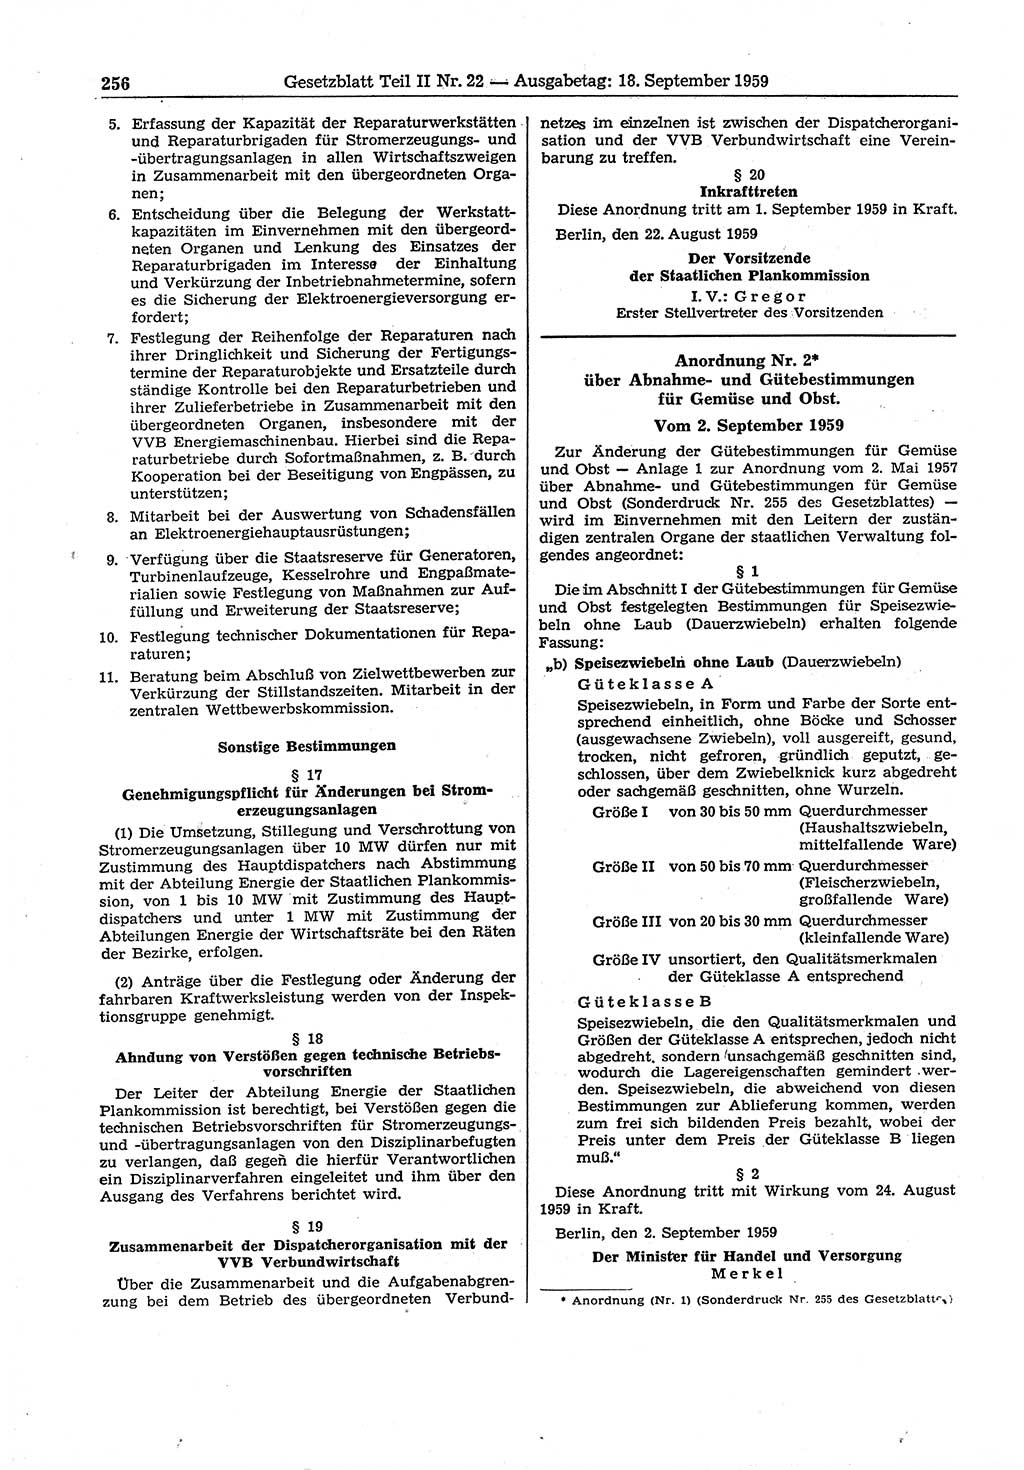 Gesetzblatt (GBl.) der Deutschen Demokratischen Republik (DDR) Teil ⅠⅠ 1959, Seite 256 (GBl. DDR ⅠⅠ 1959, S. 256)